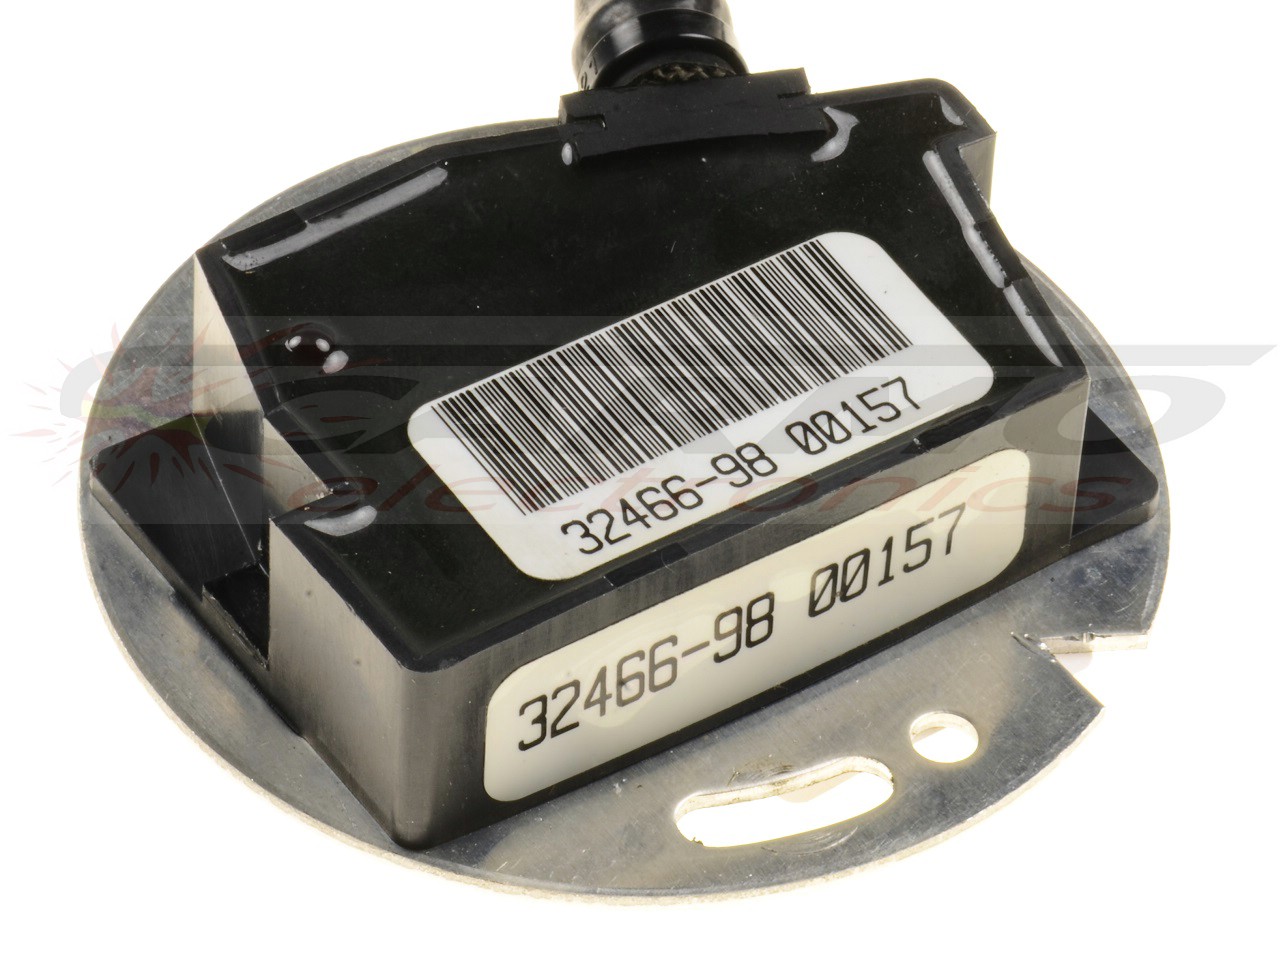 XL883 XL1200 CDI TCI Sensor da bobina de captação do ponto de ignição (32466-98)